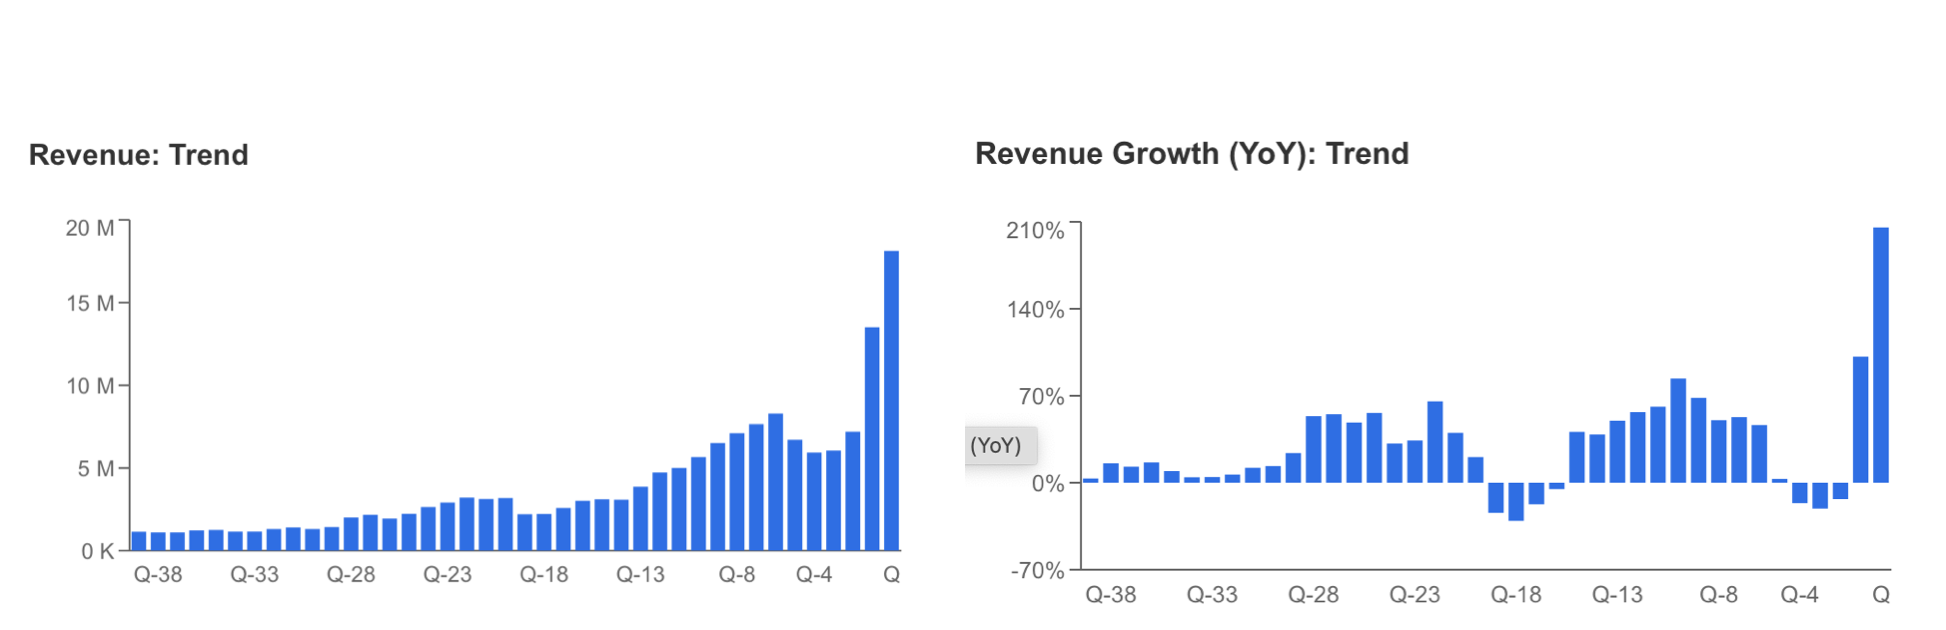 Descripción: Revenue Trend